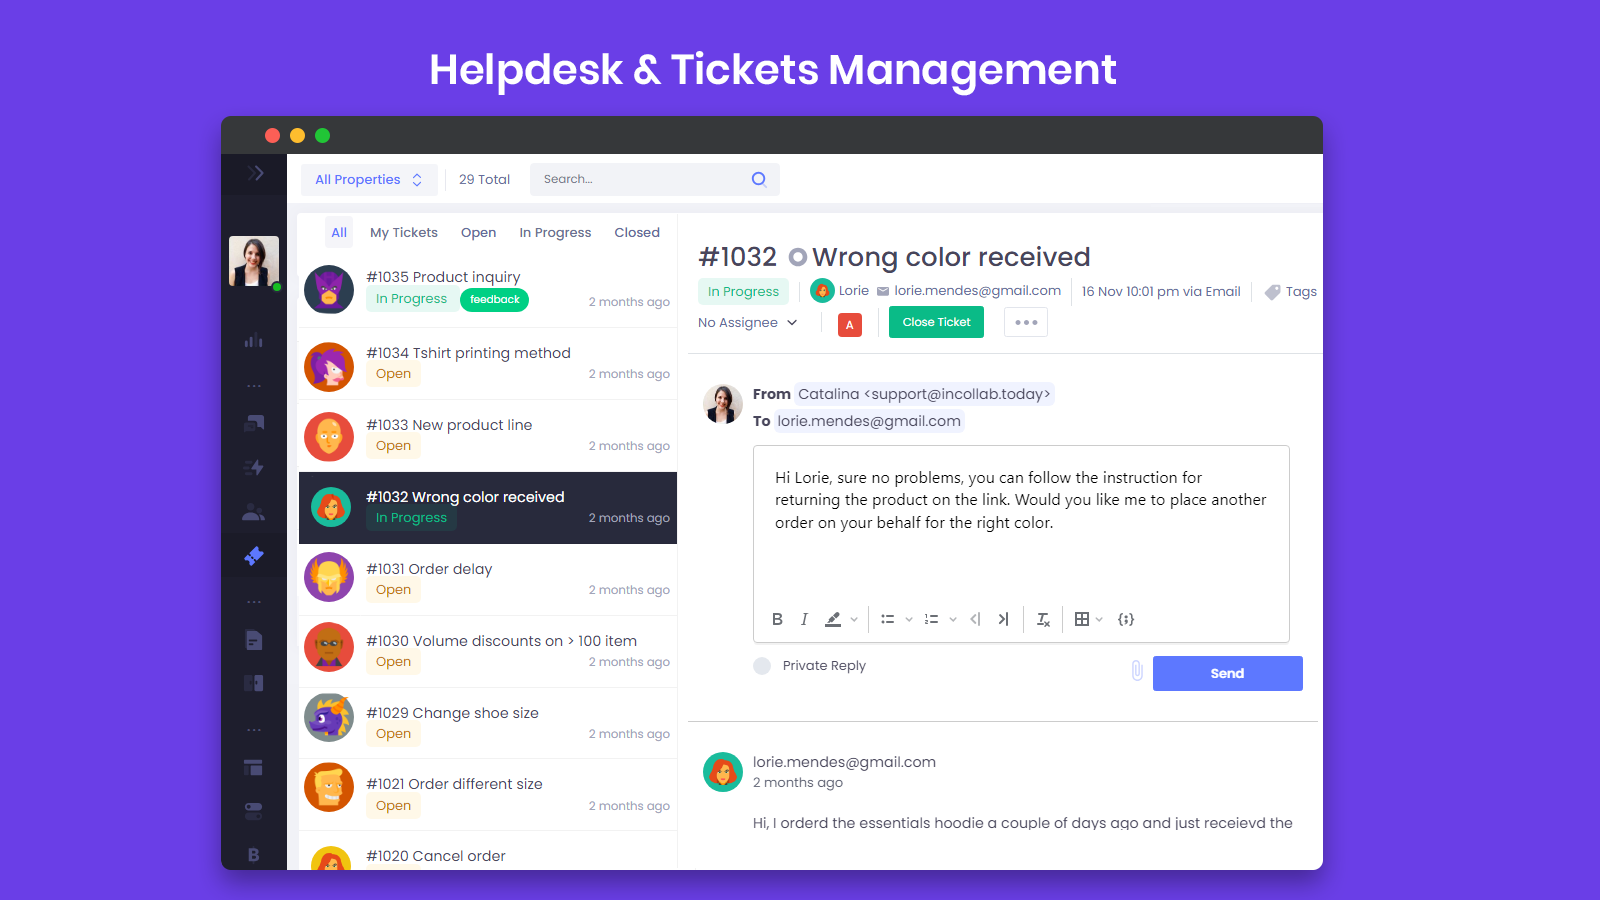 Helpdesk & Tickets Management